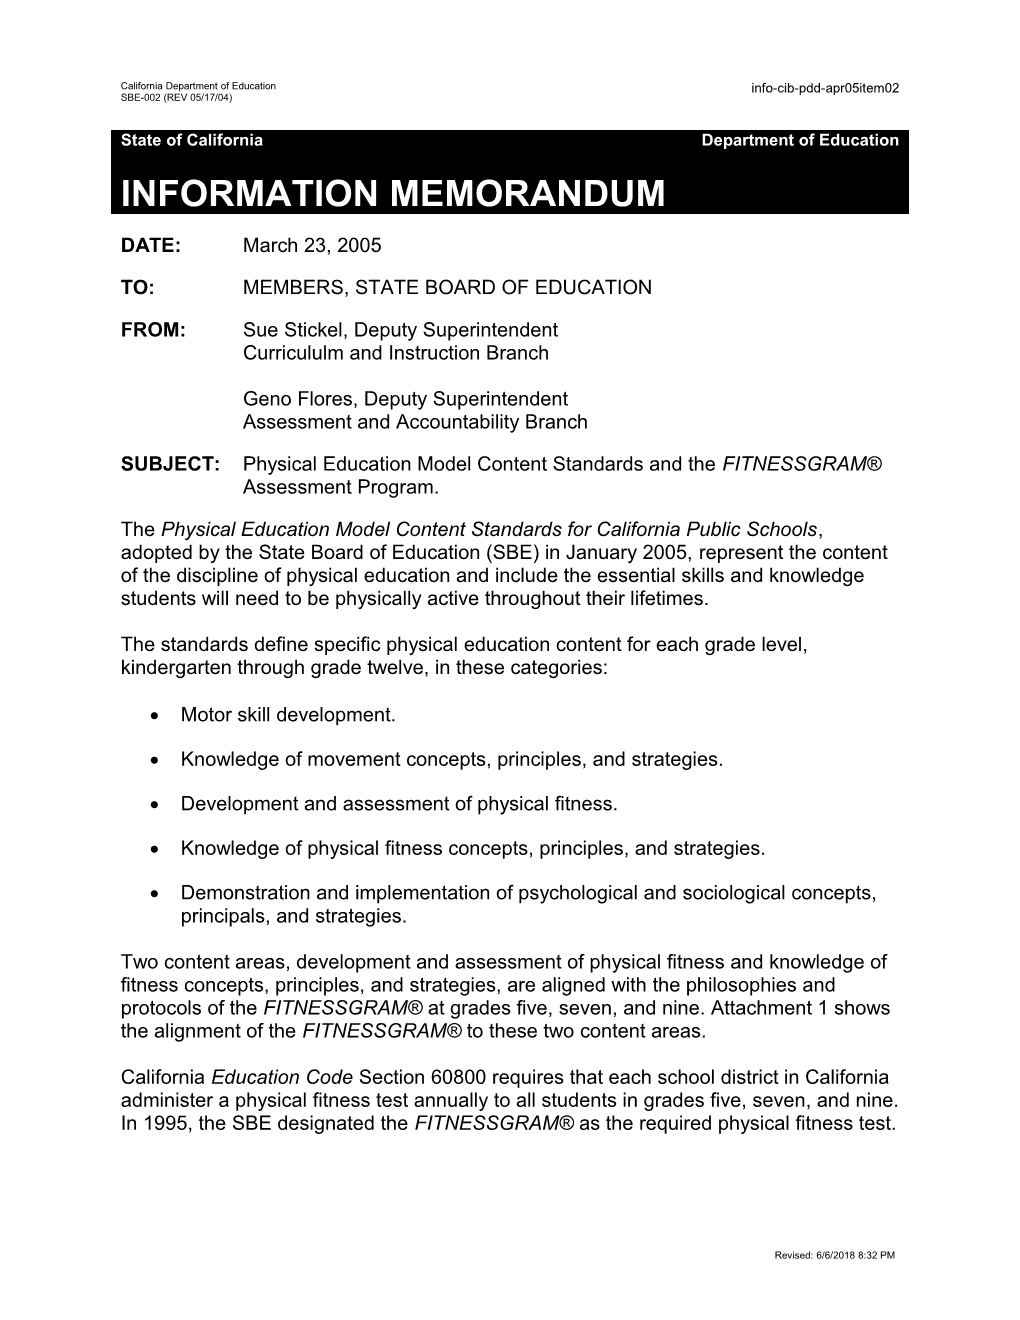 PDD Item 02 April 2005 - Information Memorandum (CA State Board of Education)